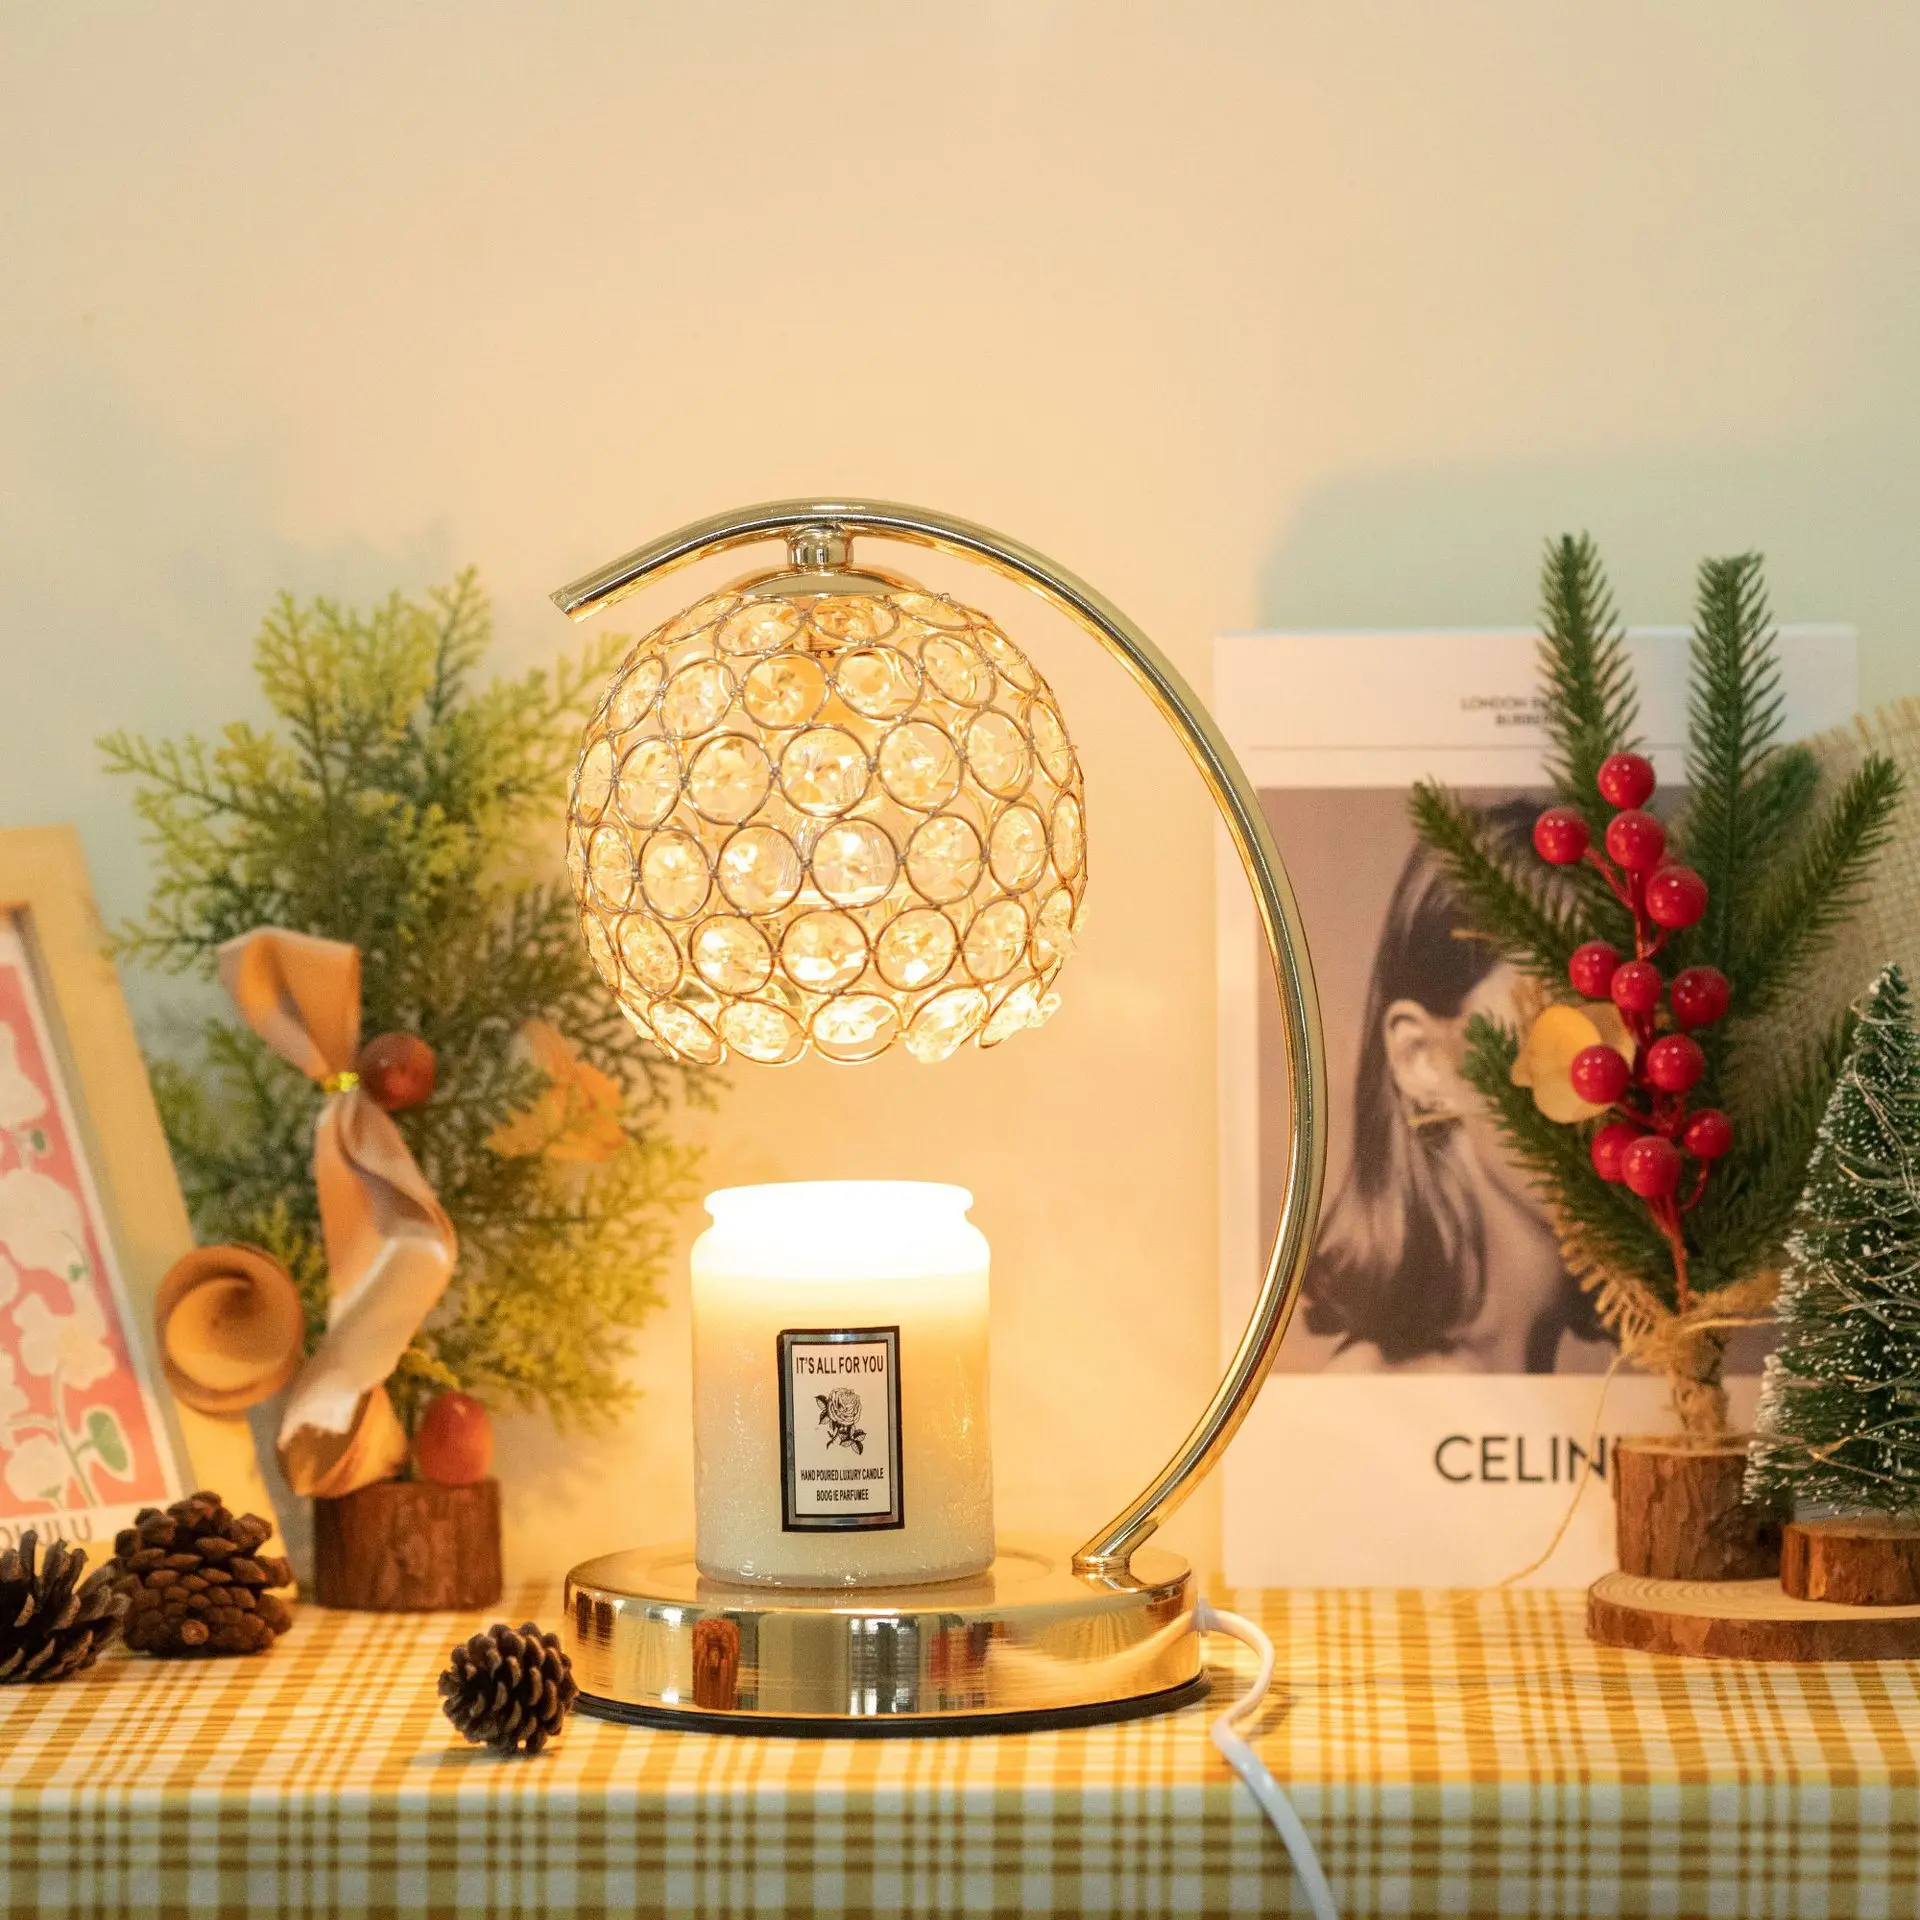 

Скандинавская лампа в виде свечи с таймером, ароматическая лампа-свеча, прикроватная лампа в стиле Ins Stlyle Girl, романтические Ароматические диффузорные лампы